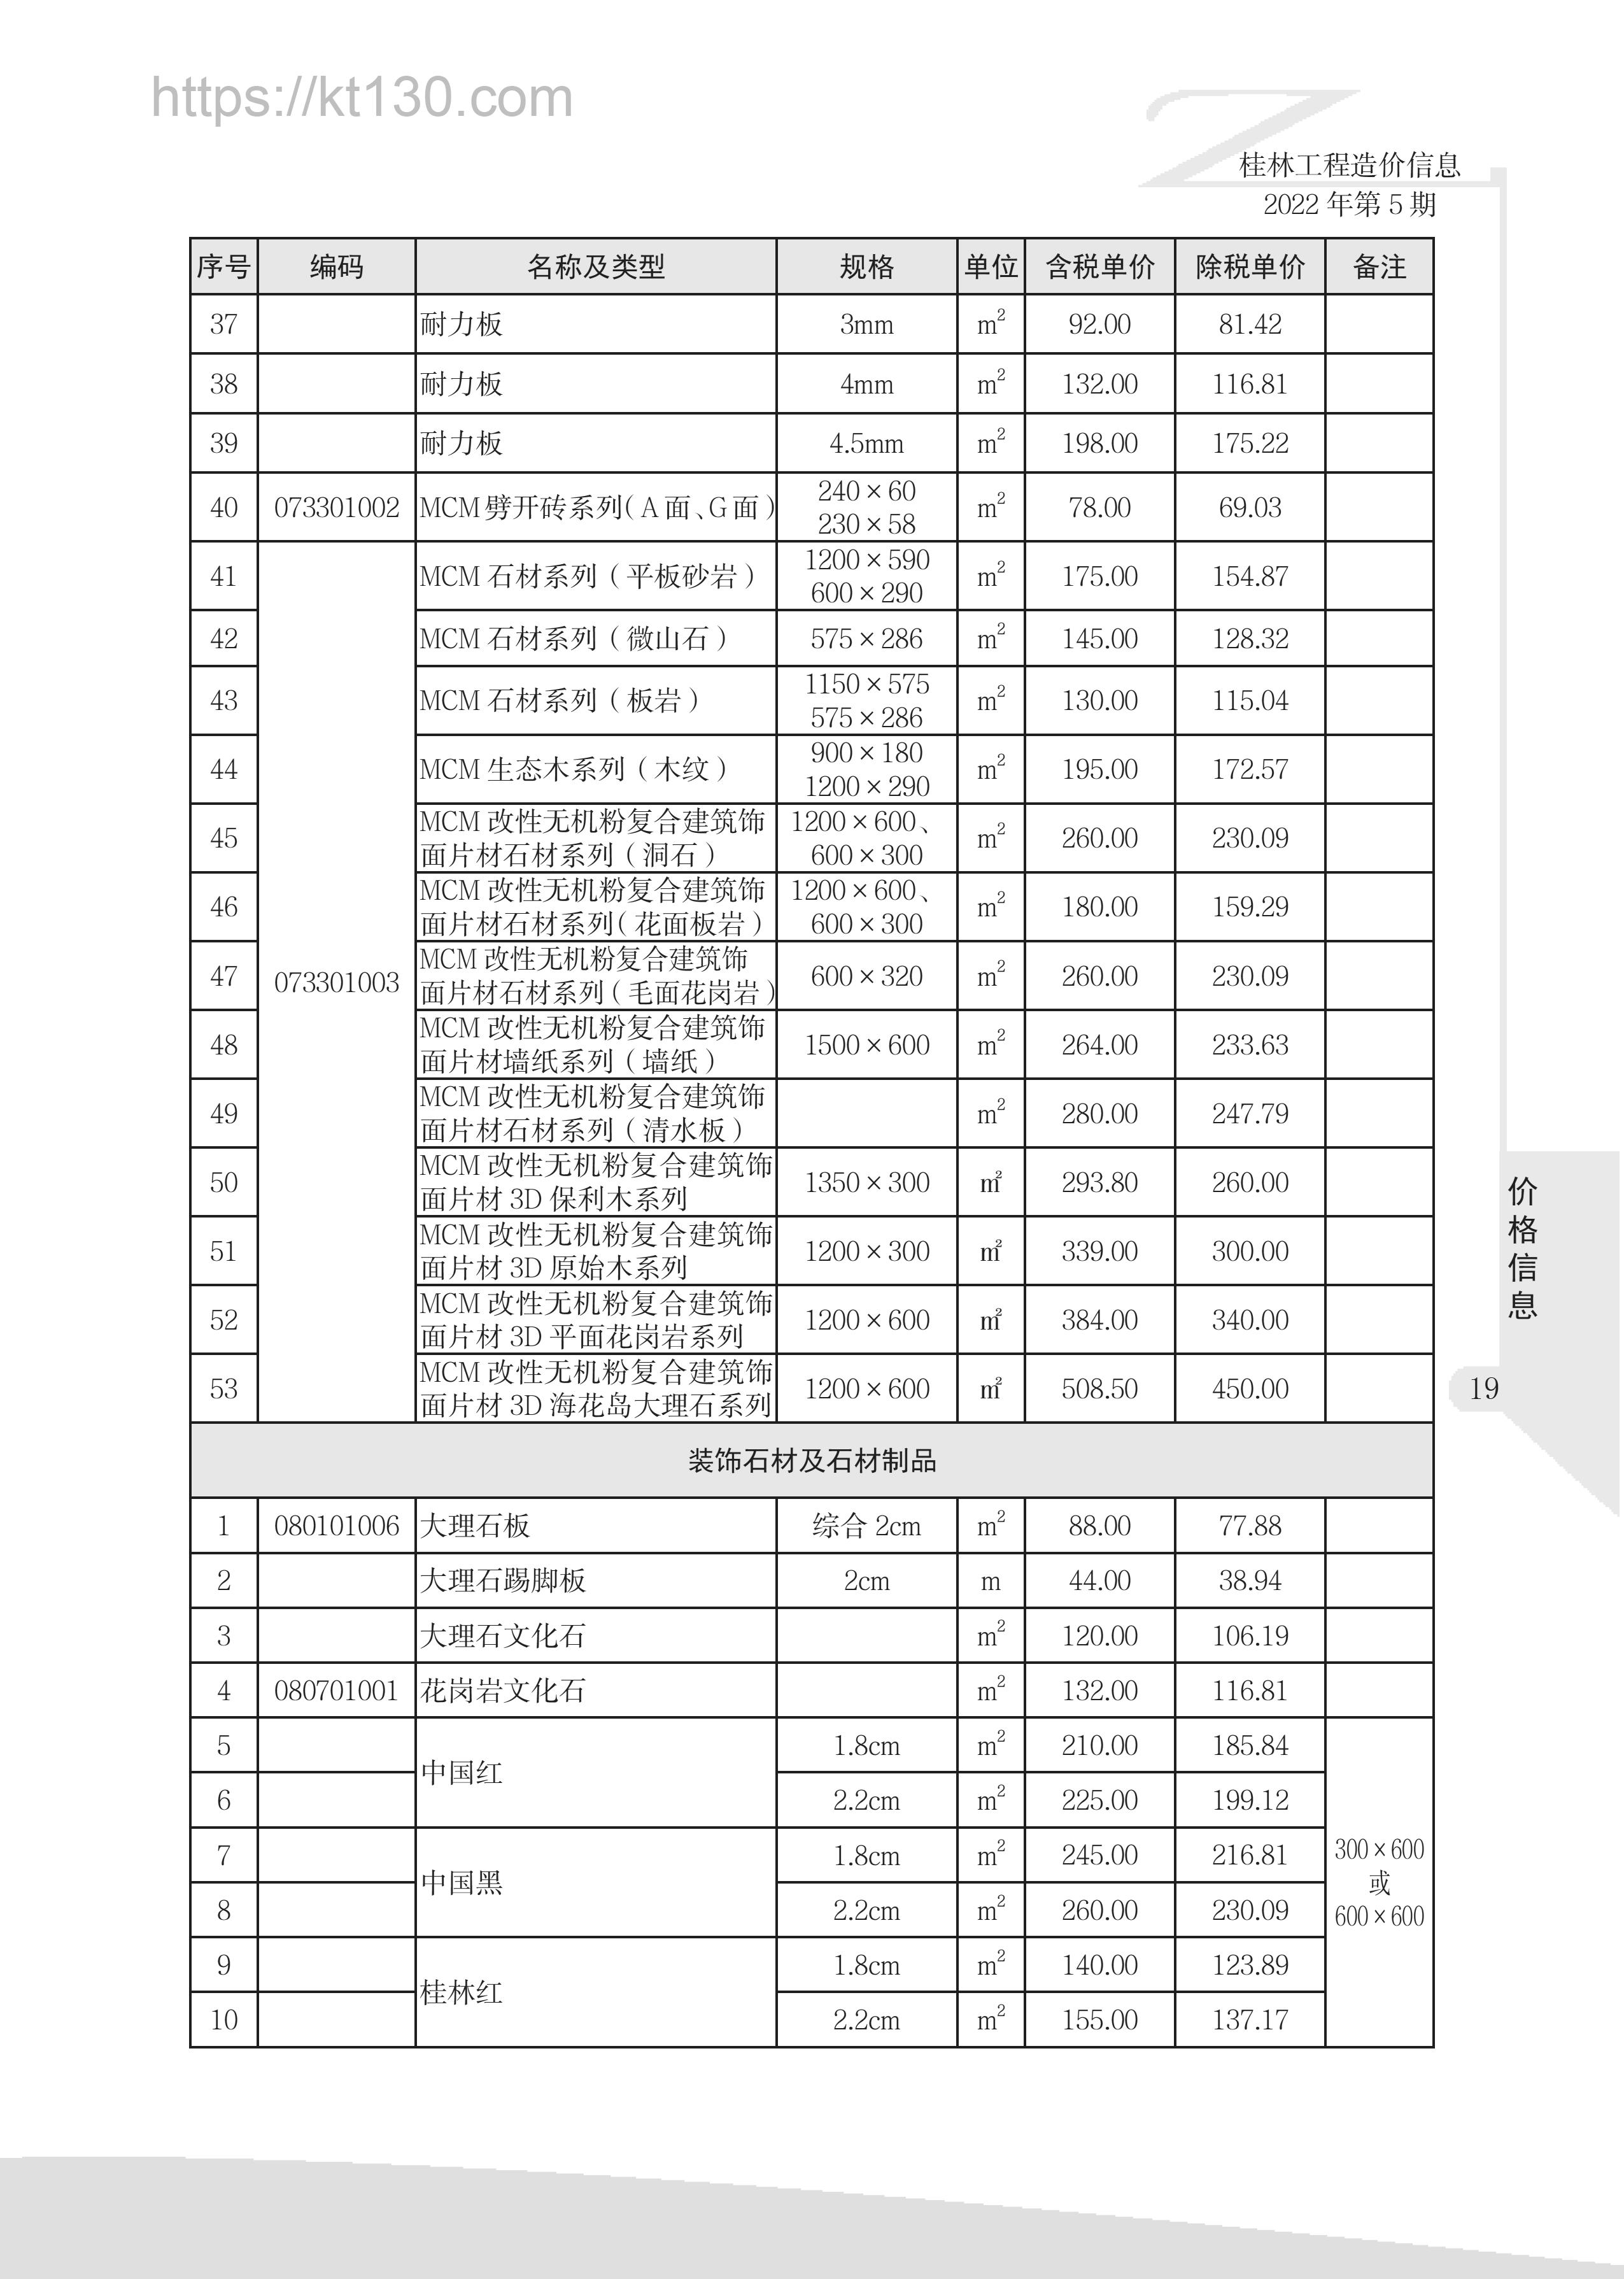 桂林市2022年5月建筑材料价_装饰石材与石材制品_51755